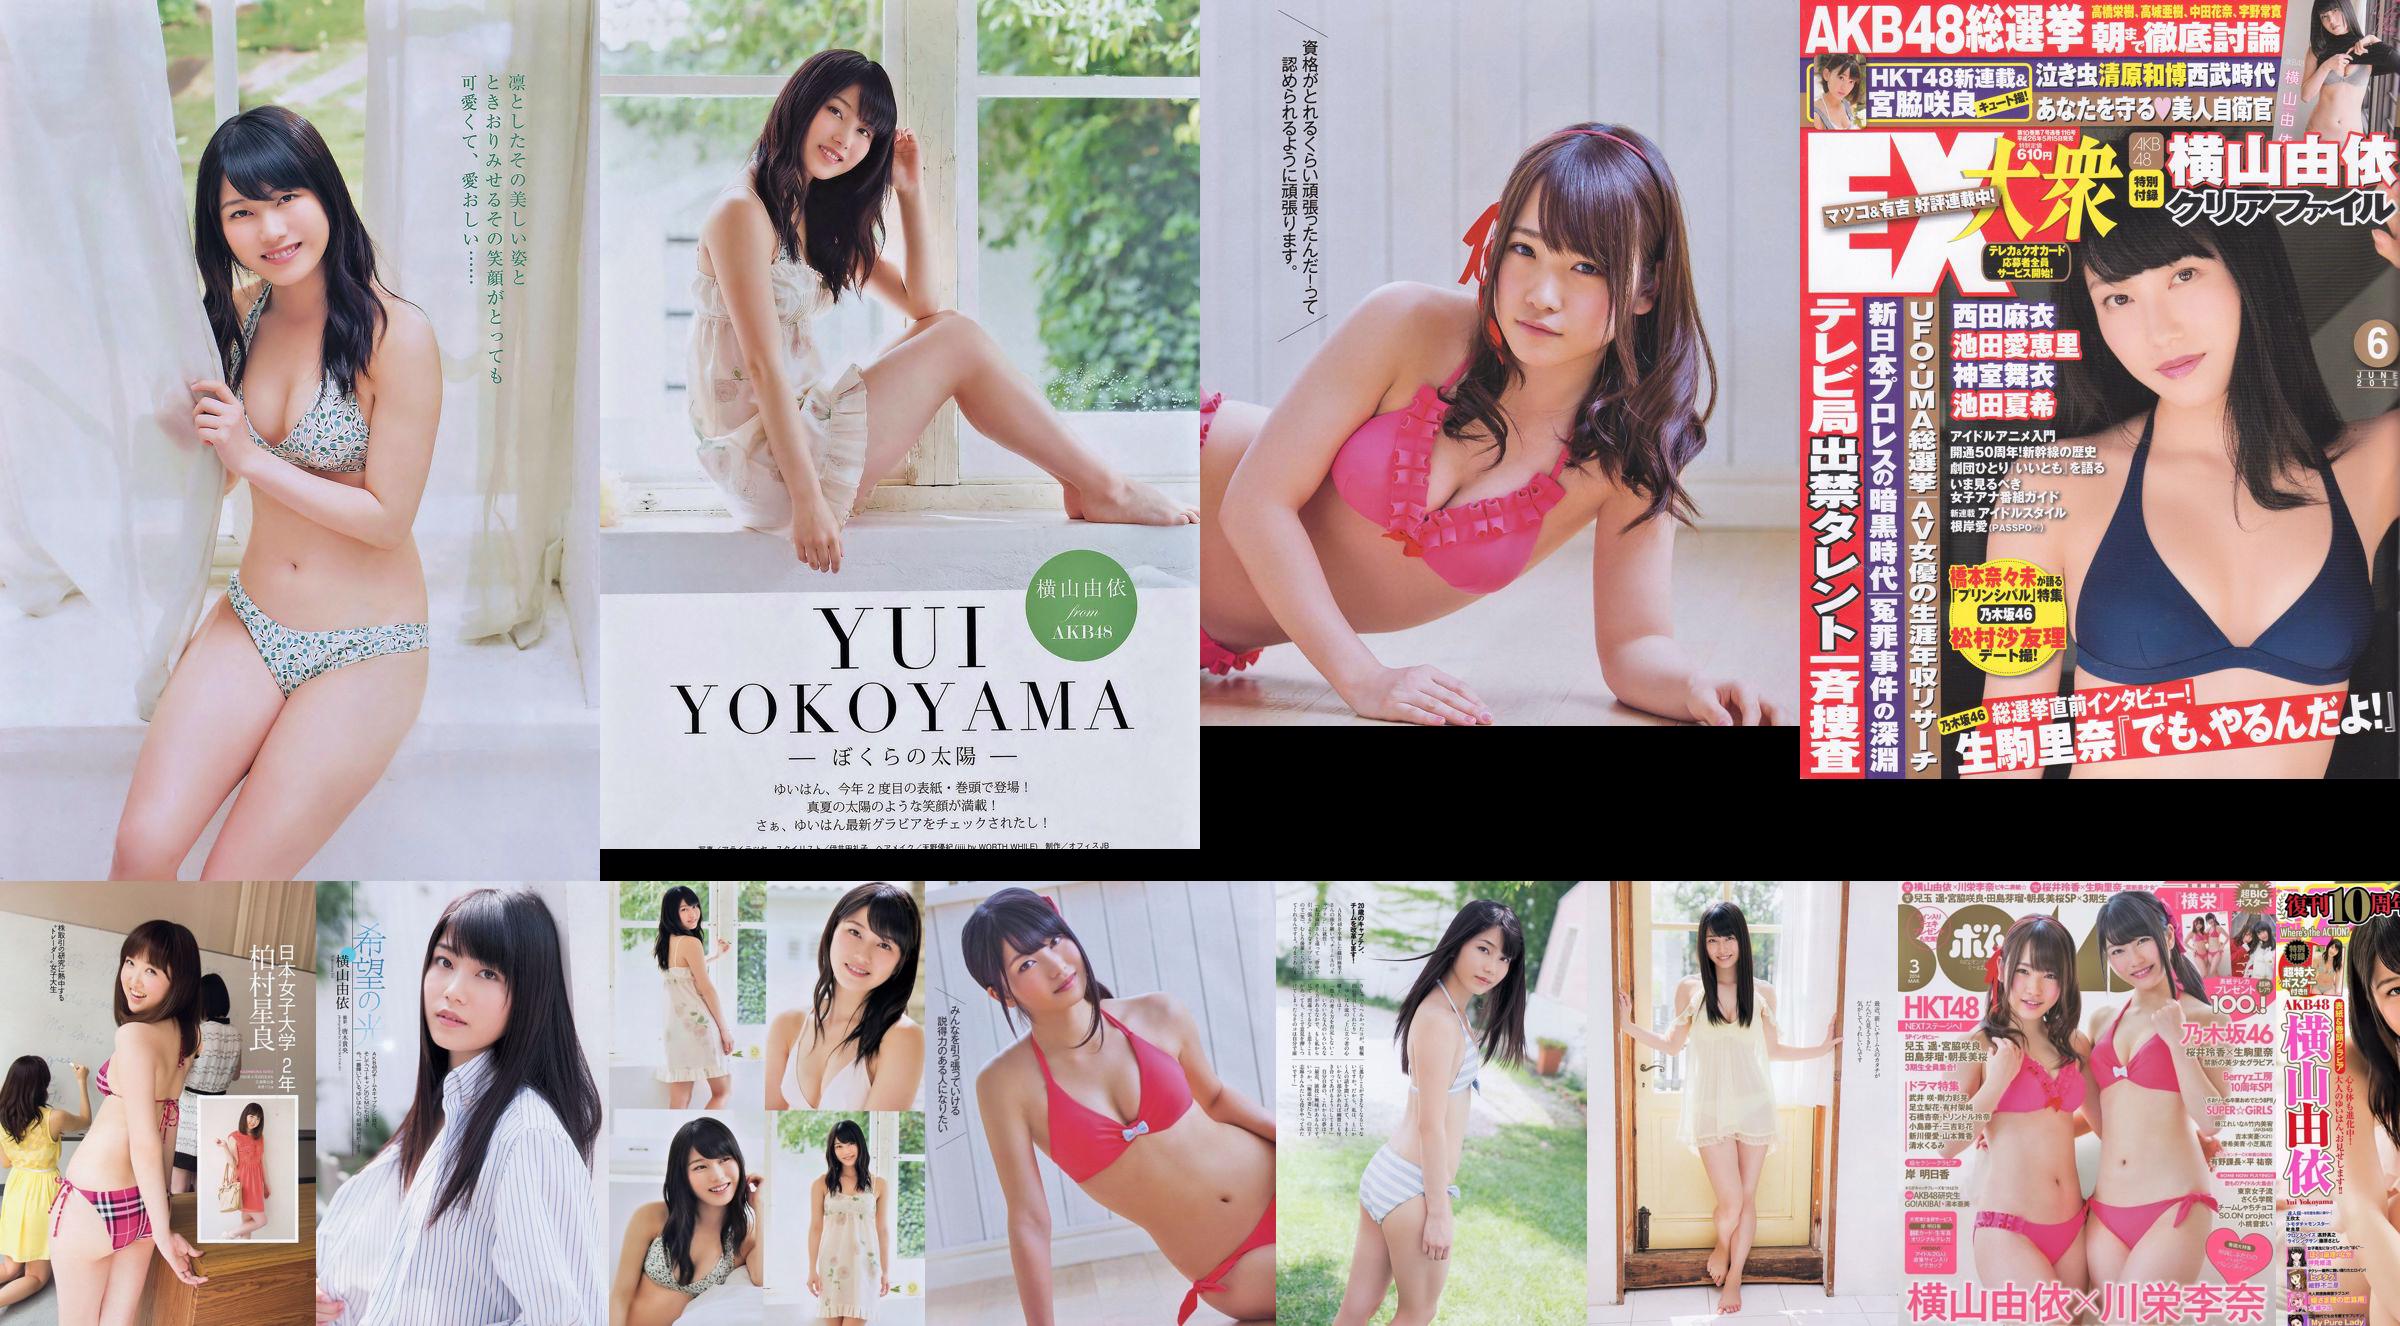 Momoiro Clover Z Yui Yokoyama Yua Shinkawa Mio Uema Anri Sugihara Kumi Yagami [Playboy settimanale] 2013 No.20 Foto Moshi No.18c71c Pagina 6